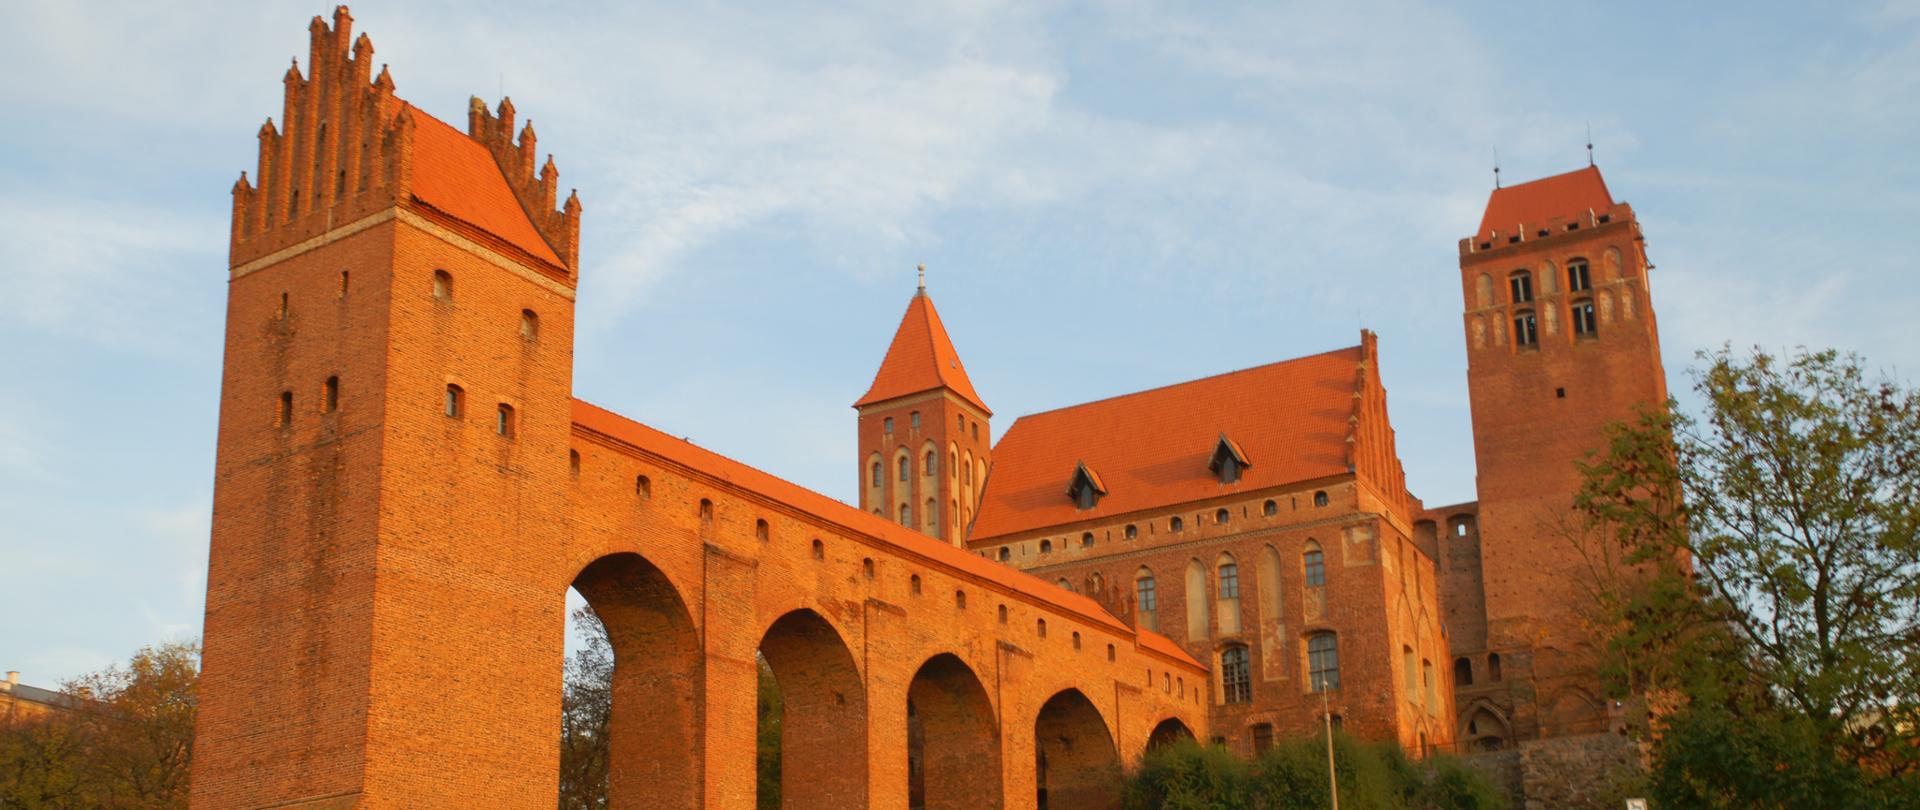 Zamek w Kwidzynie - Oddział Muzeum Zamkowego w Malborku